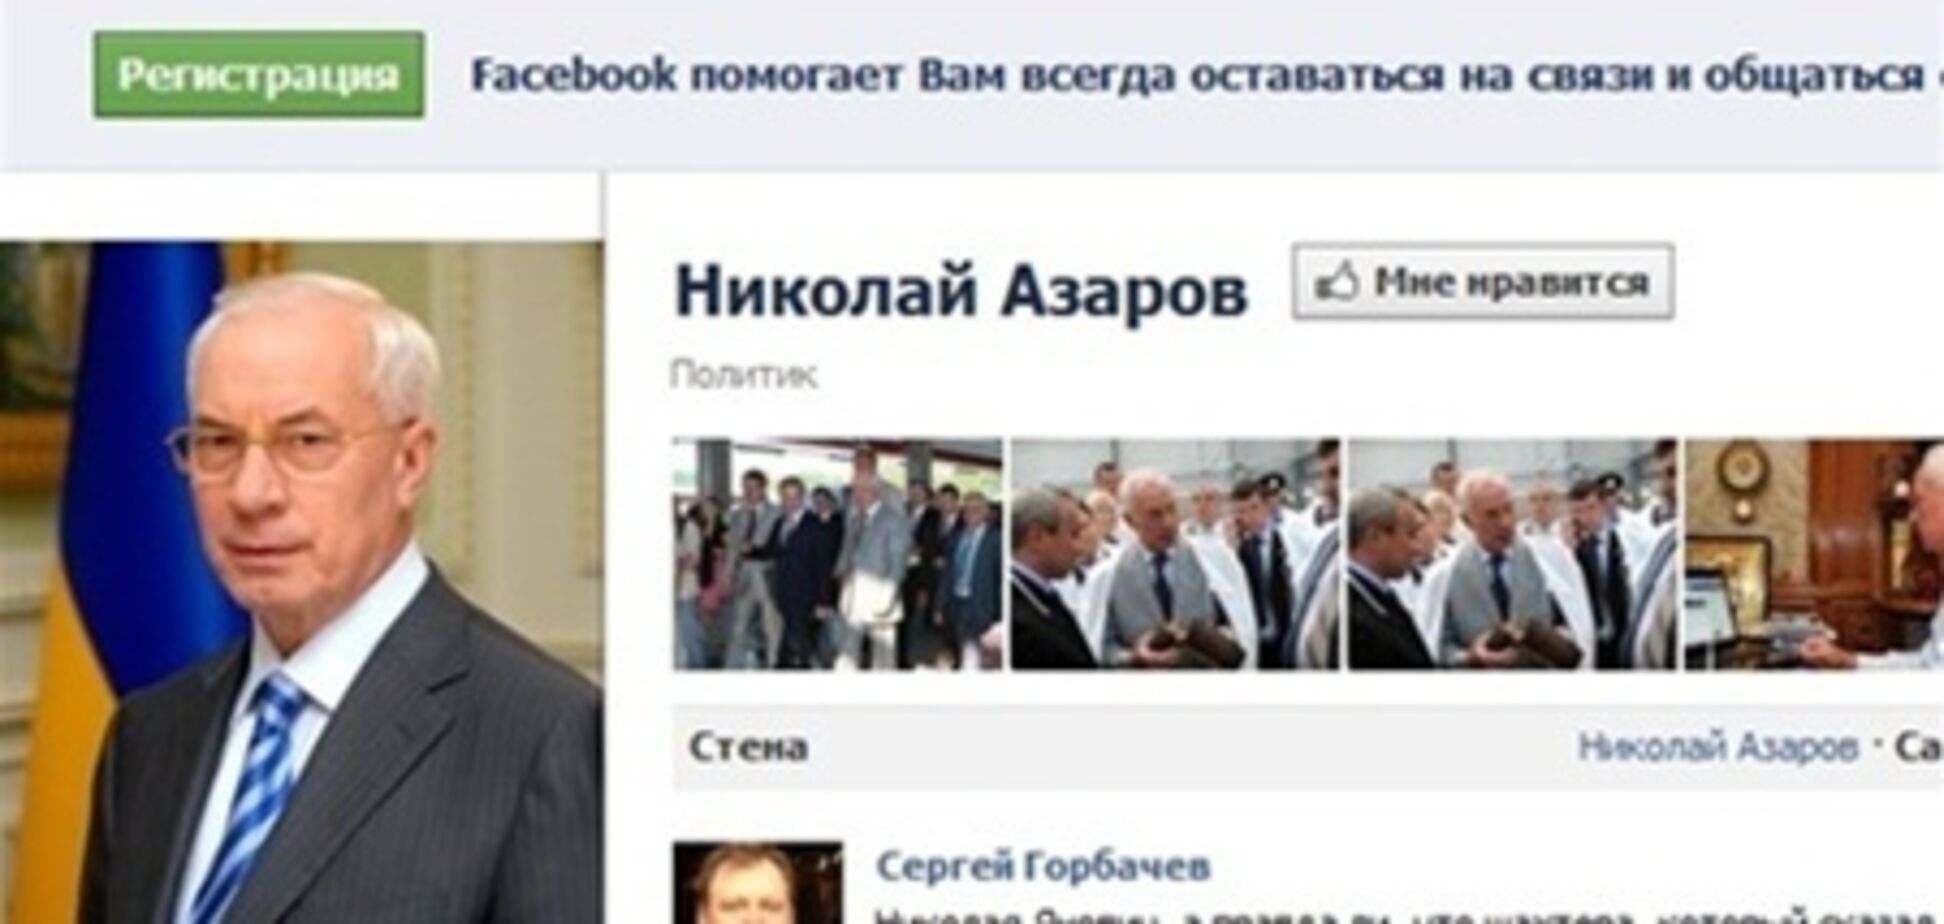 Азарову нравится, когда его хвалят в Facebook